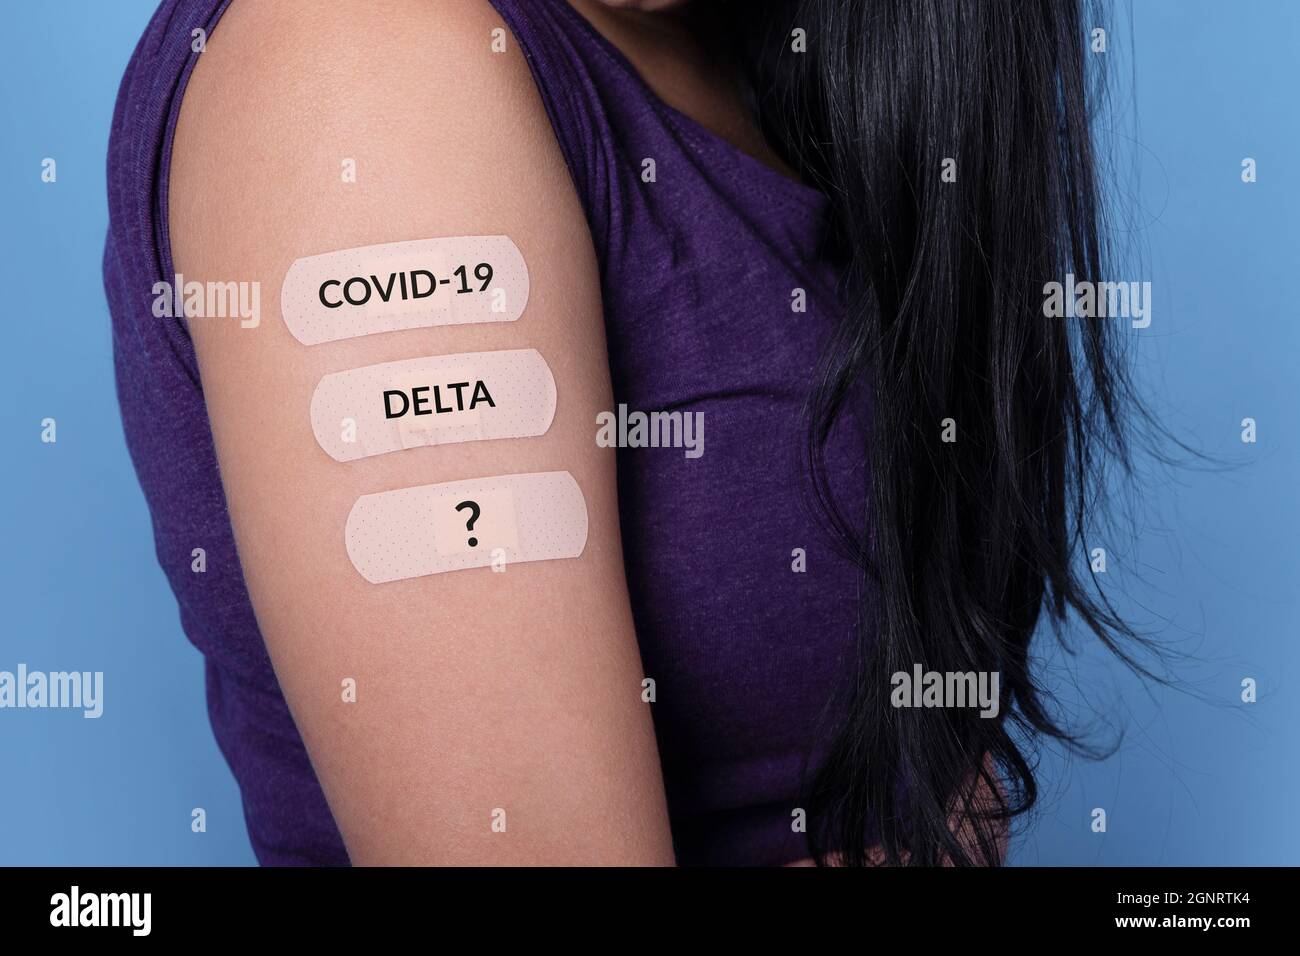 mujer que muestra muchos tiritas en el hombro con inscripción covid-19, delta, después de la vacuna coronavirus, nuevos sellos y concepto de mutación Foto de stock